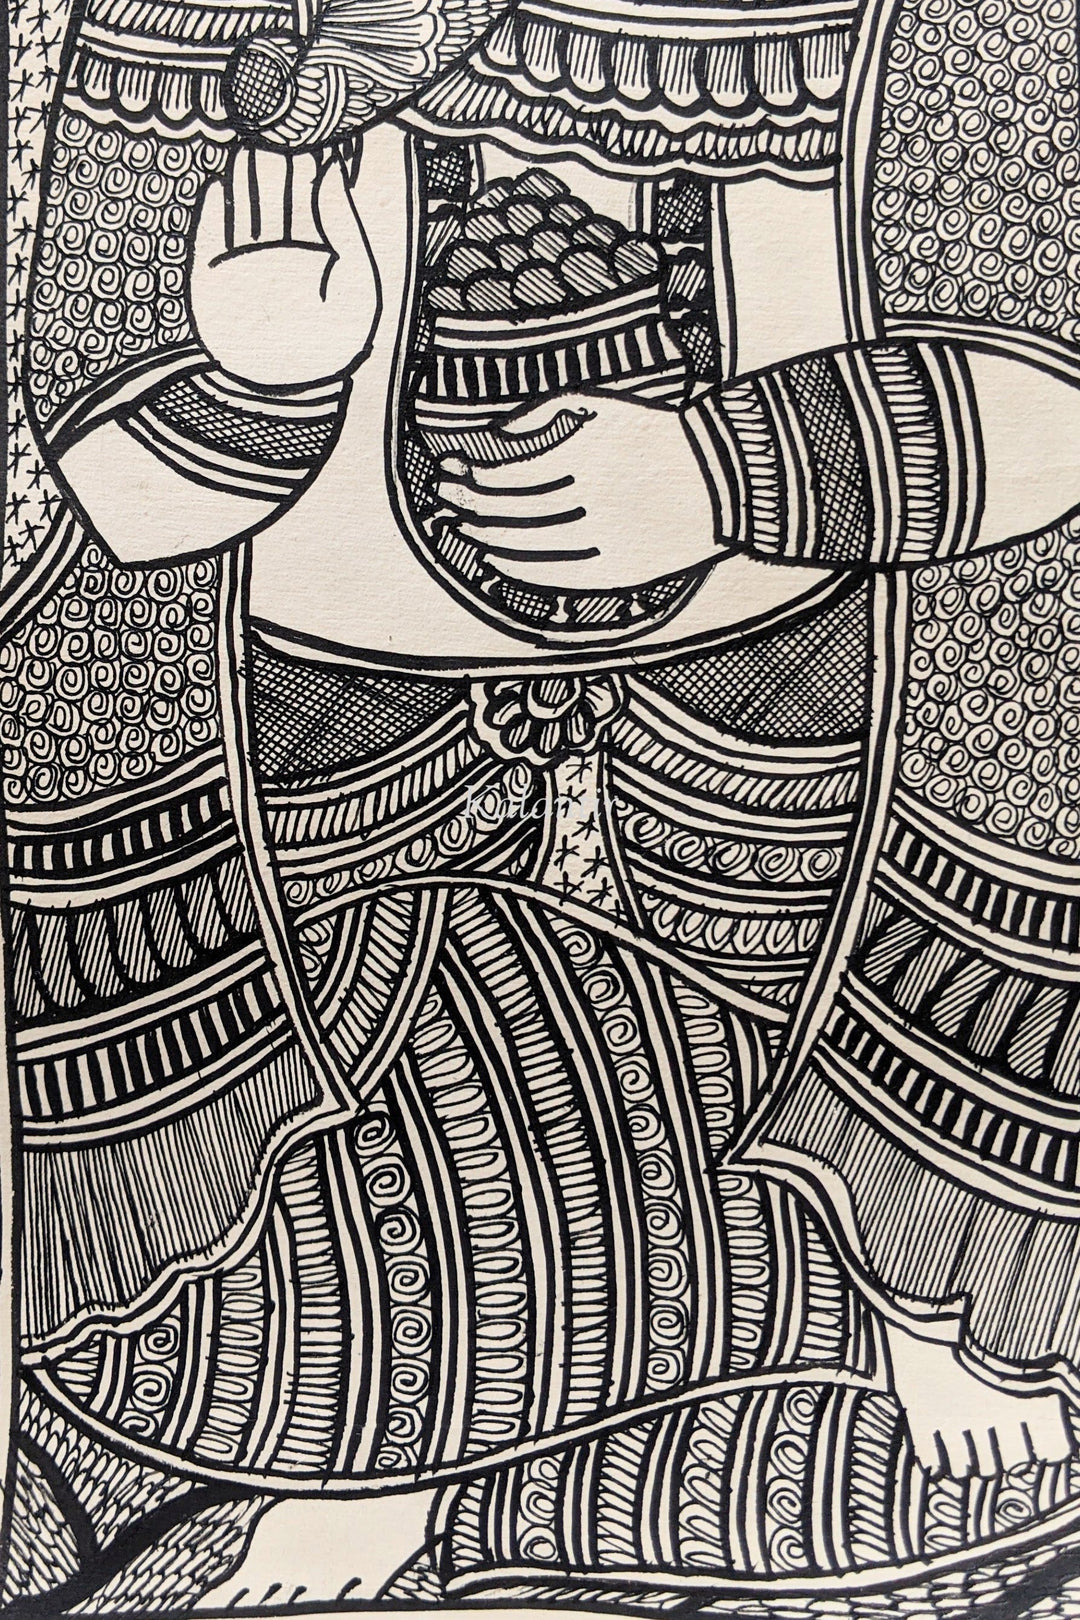 Lord Ganesha B&W Madhubani Painting | Without Frame